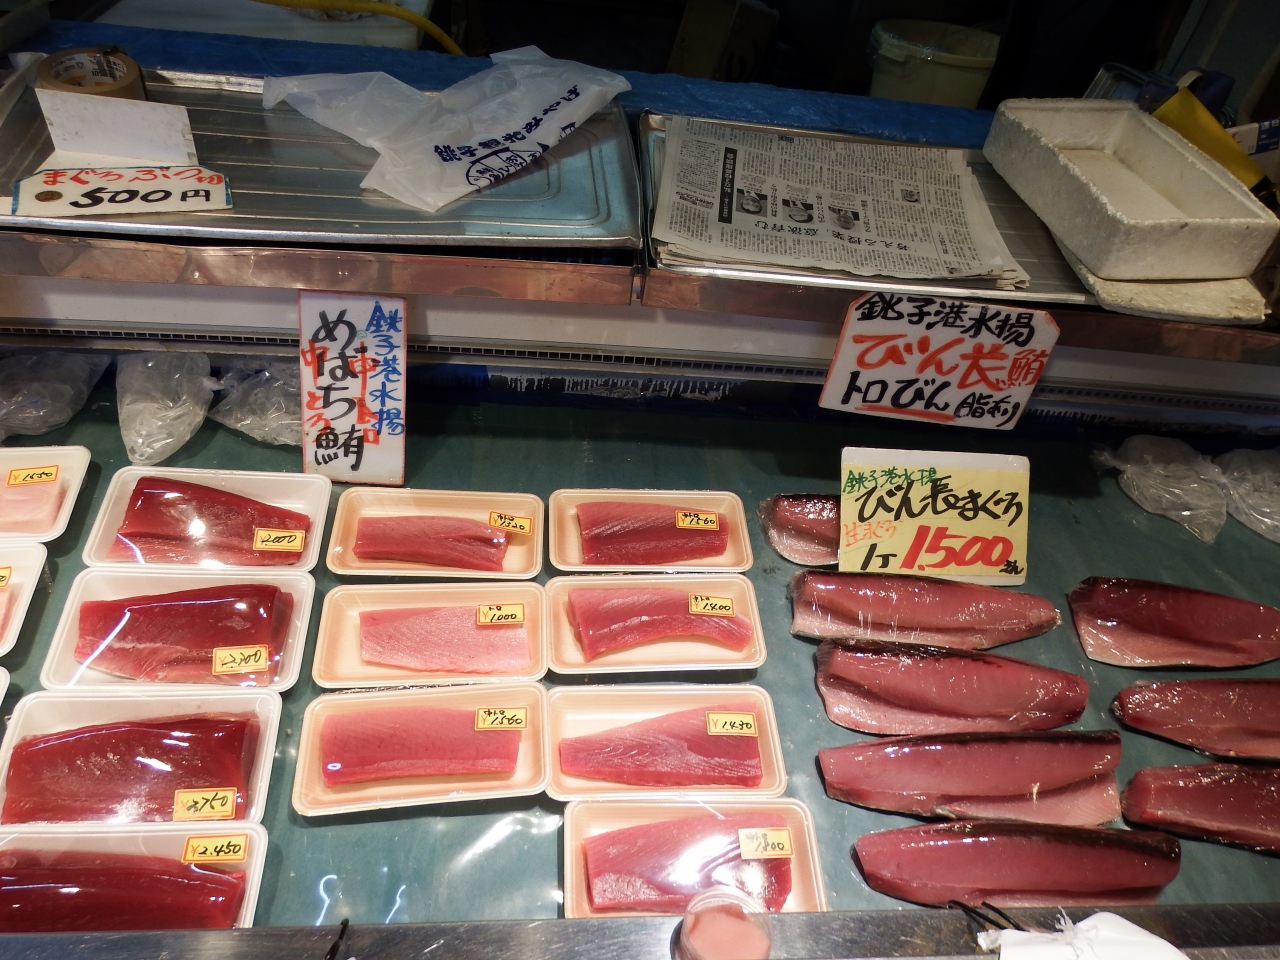 銚子 ウオッセ２１でのマグロ買い 銚子 千葉県 の旅行記 ブログ By メンデル親父さん フォートラベル